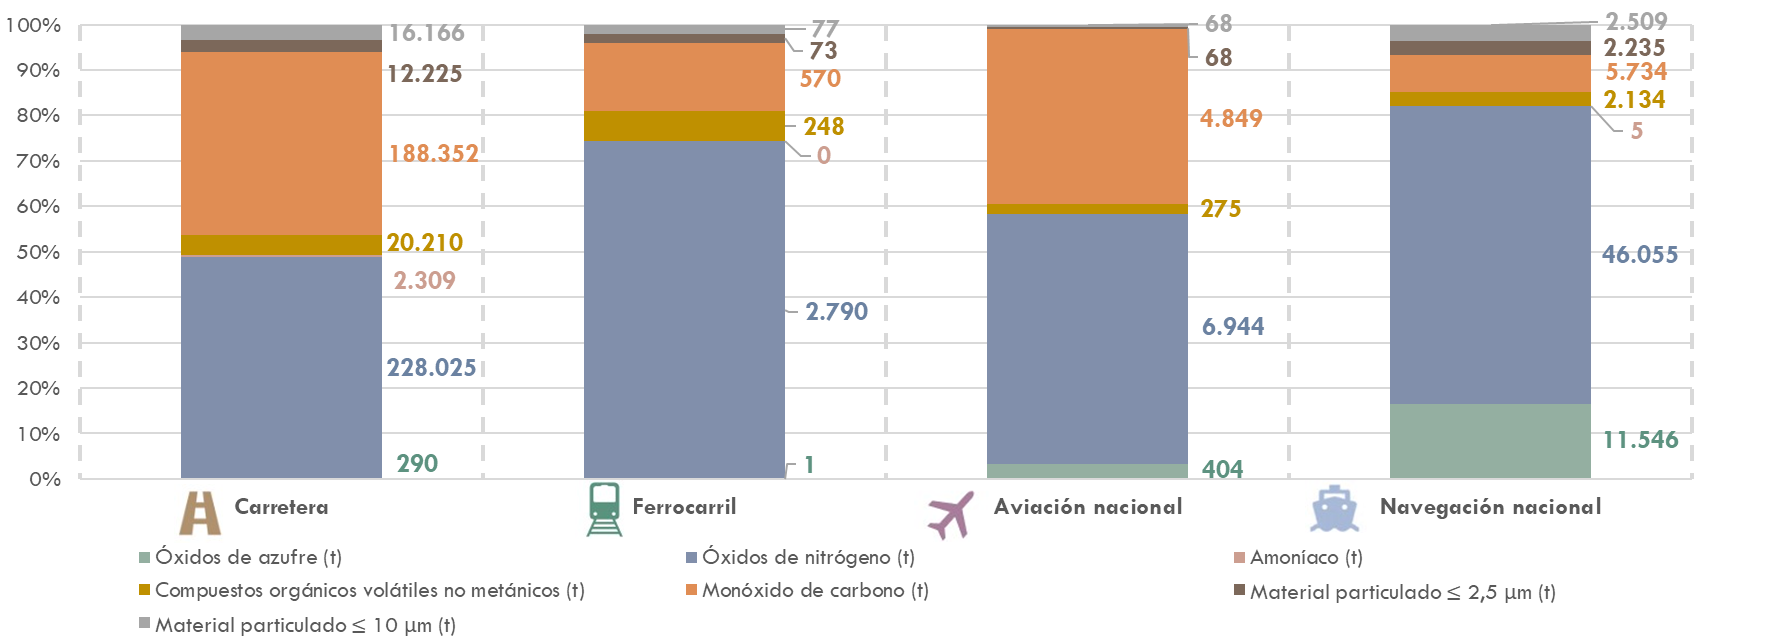 ráfico20 Emisionesde contaminantes por modos de transporte en España y participaciónsobre el total (t y %). Año 2020. La explicación del gráfico se detalla a continuación de la imagen.